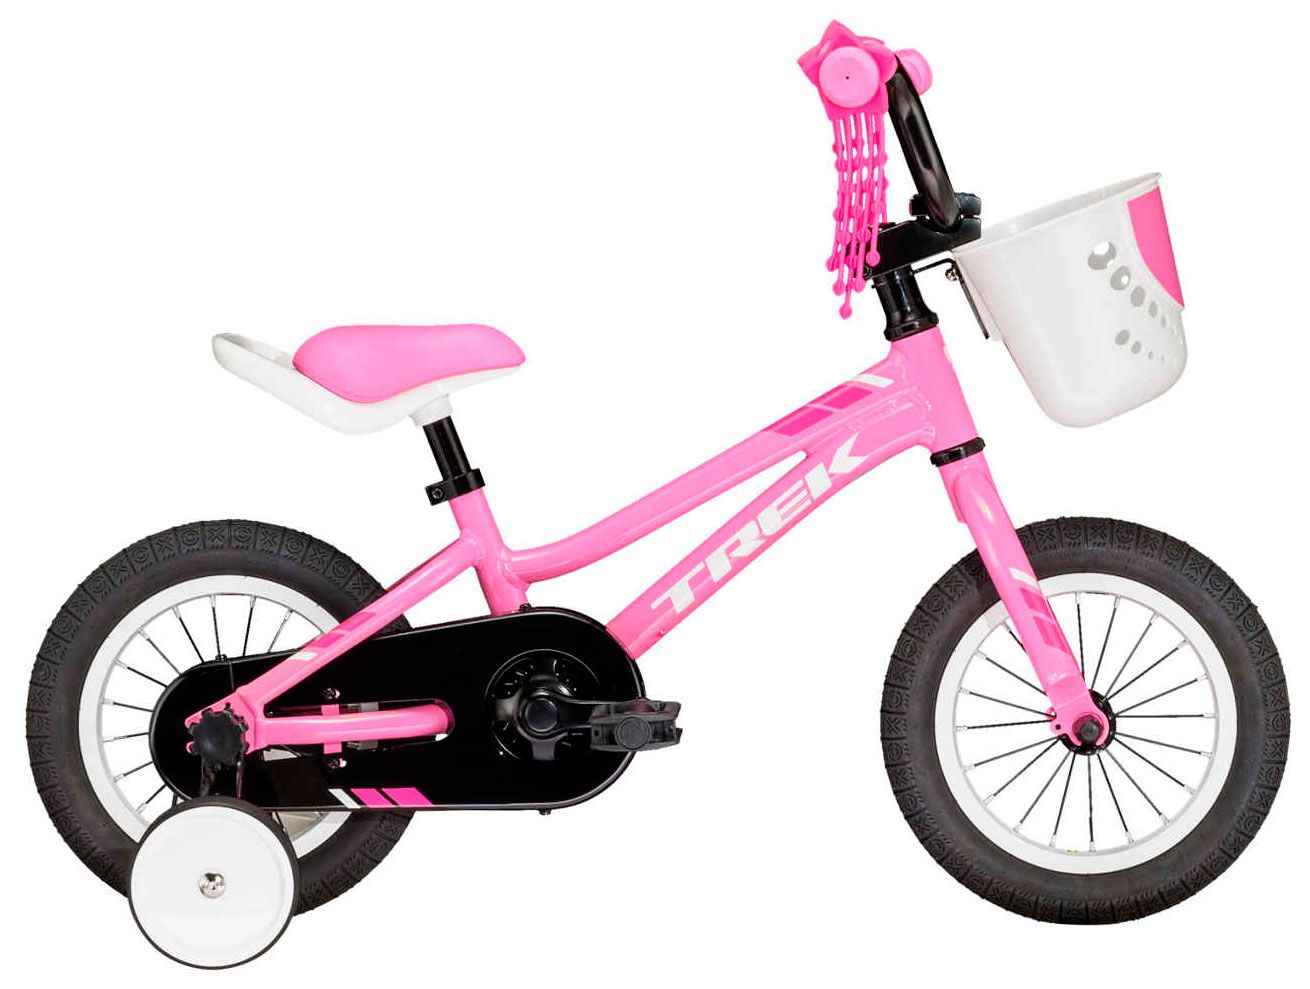  Отзывы о Детском велосипеде Trek Precaliber 12 Girls 2022